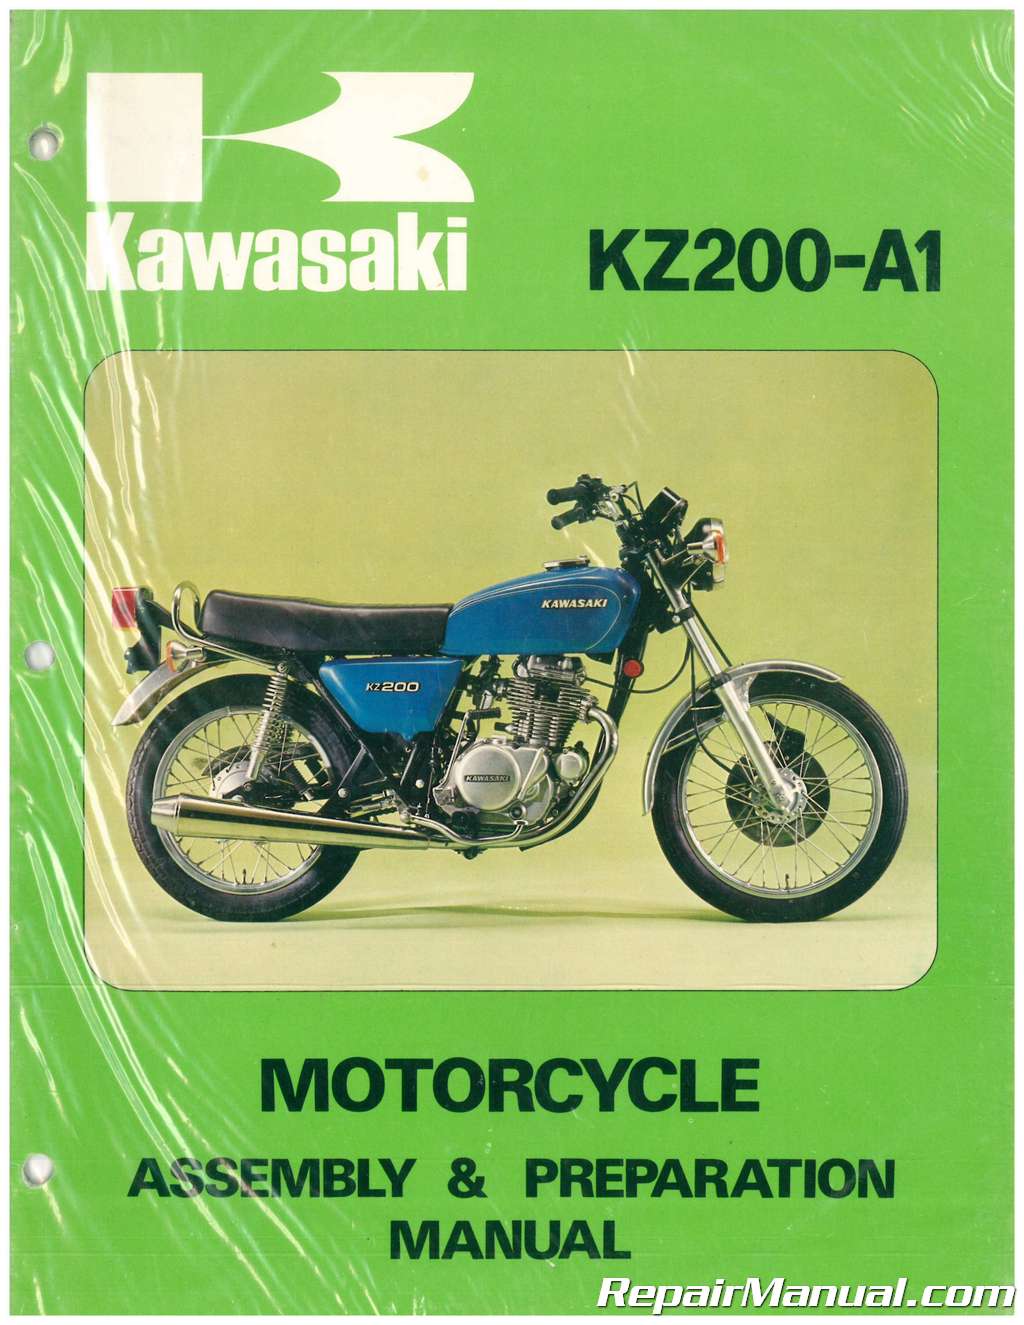 1978 Kawasaki KZ200 A1 Motorcycle Assembly Preparation Manual